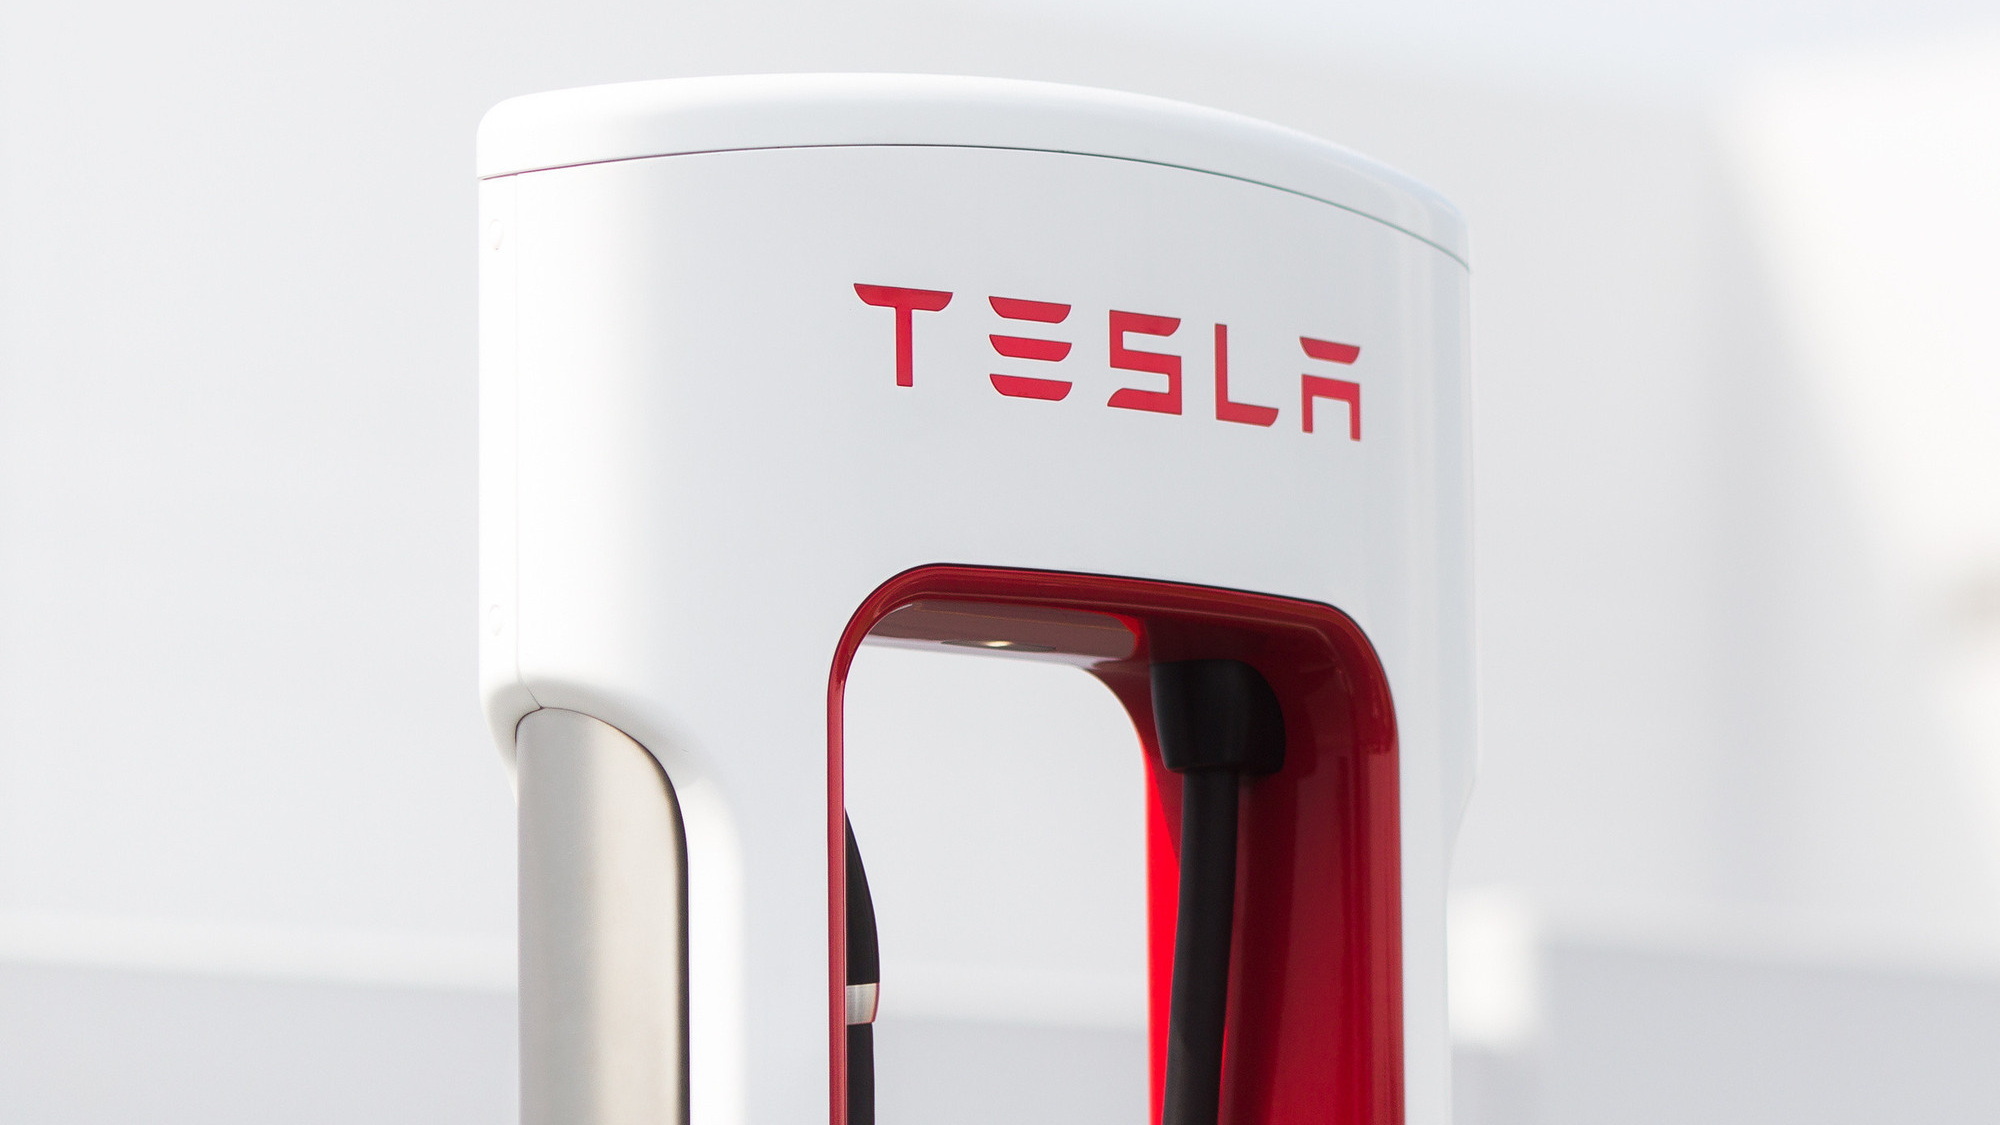 Tesla Supercharger 250 KW Dock Station for High Speed Tesla Brand